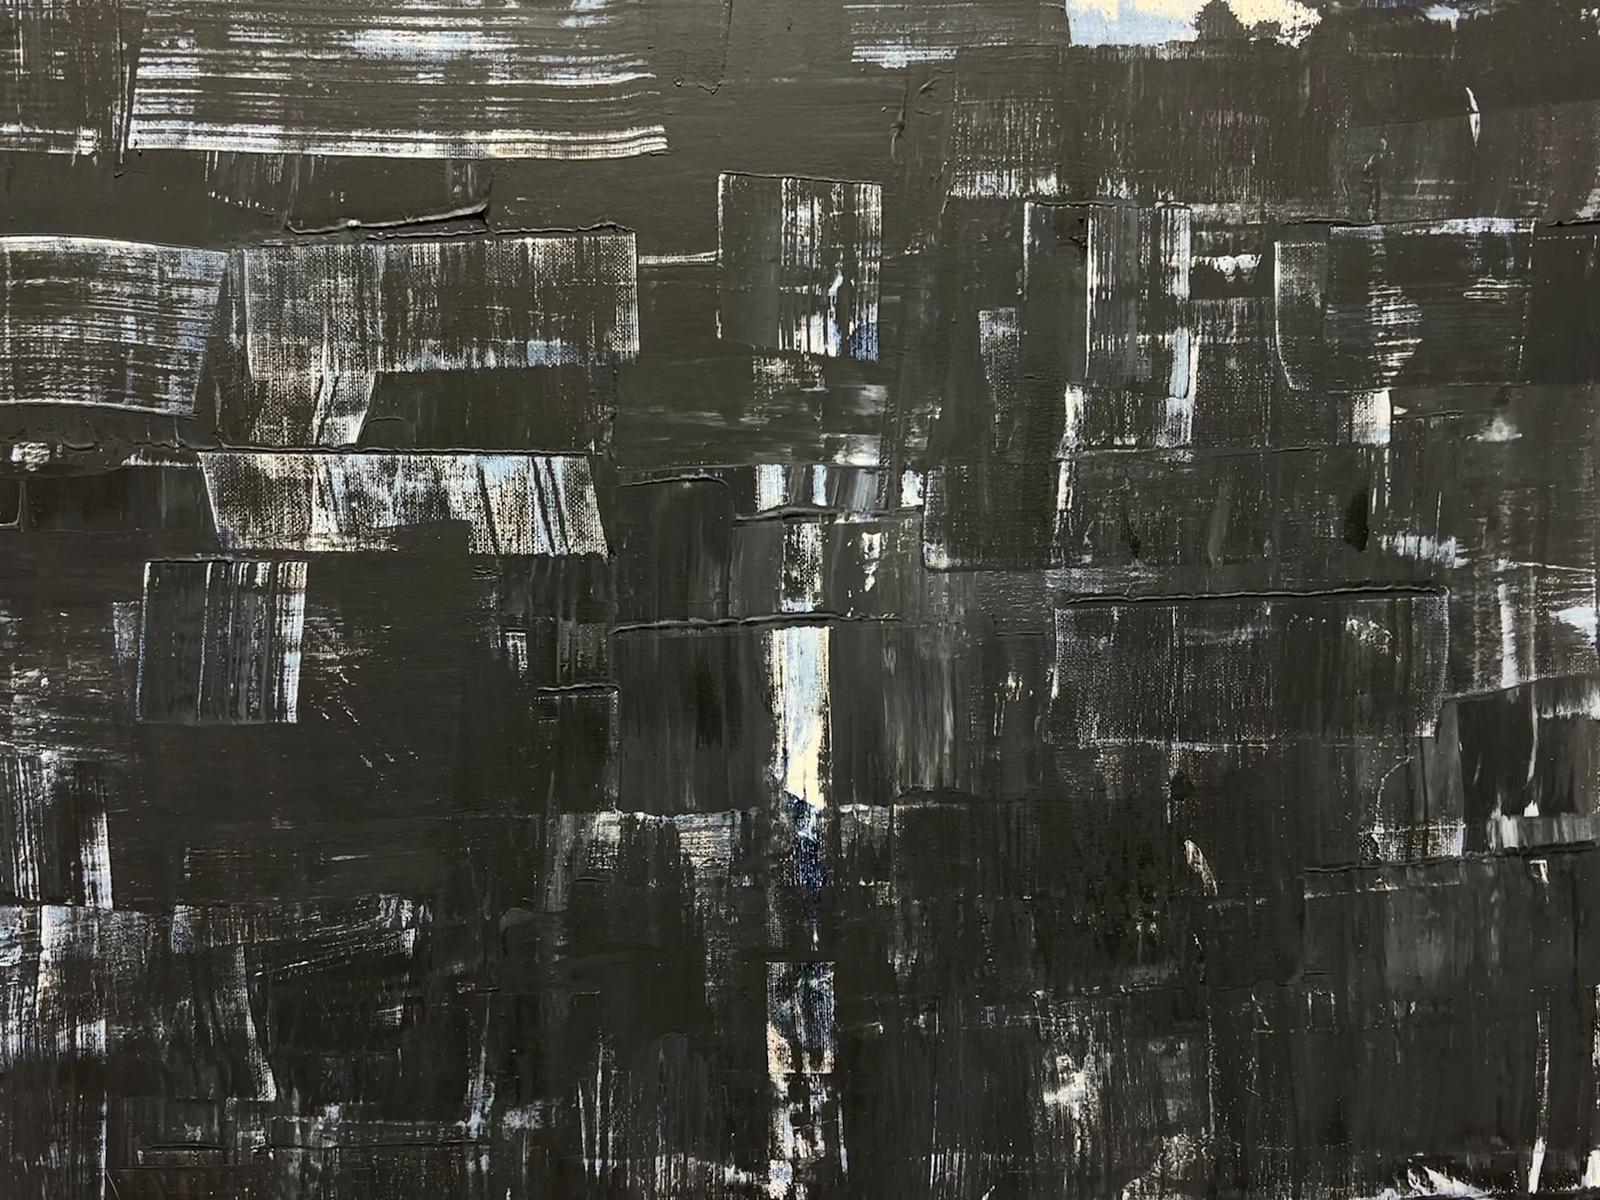 Grande peinture abstraite expressionniste britannique noire, grise et blanche d'origine